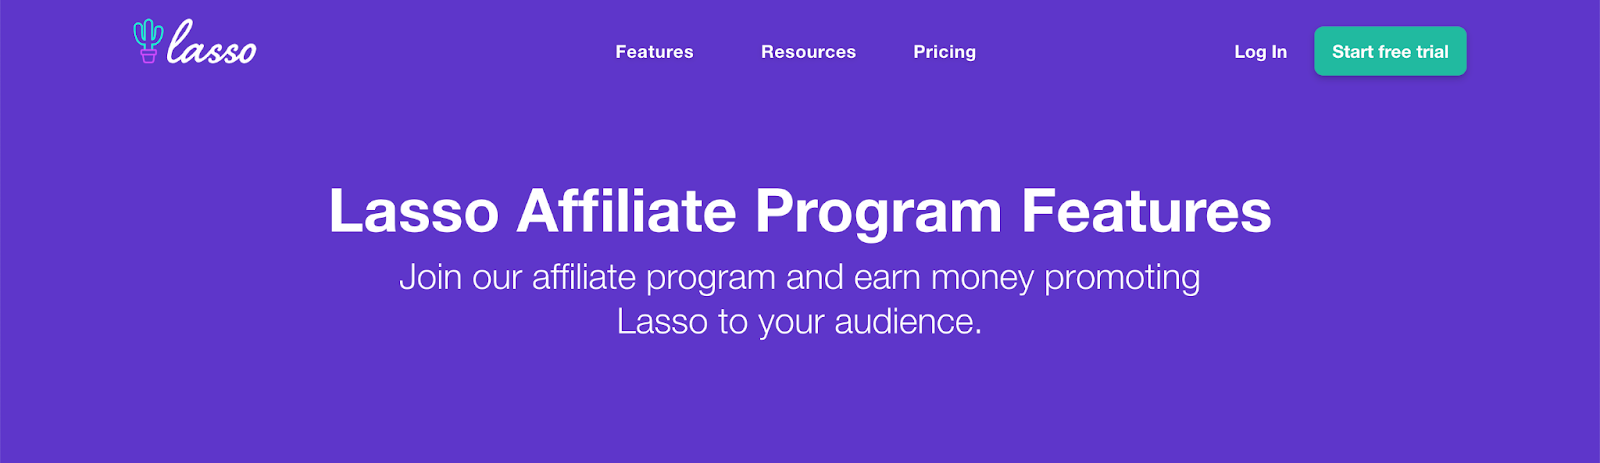 lasso affiliate program features page